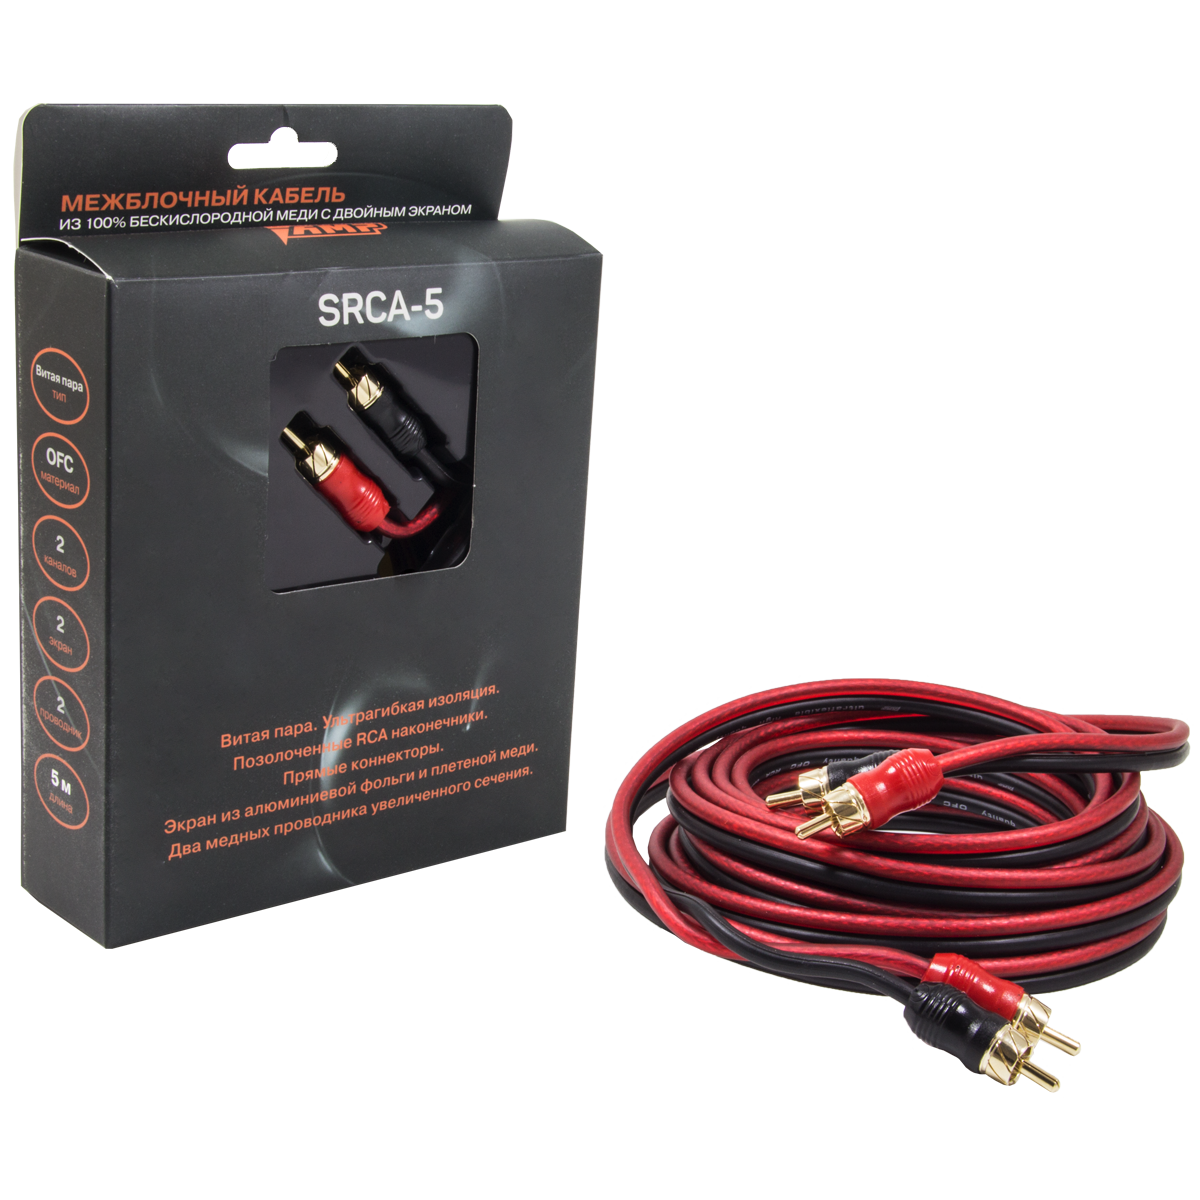 Провод соединительный AMP SRCA-5 Межблочный кабель-медь (5м) купить в интернет магазине AMPGROUP.  Провод соединительный AMP SRCA-5 Межблочный кабель-медь (5м)   цены, большой каталог, новинки.
